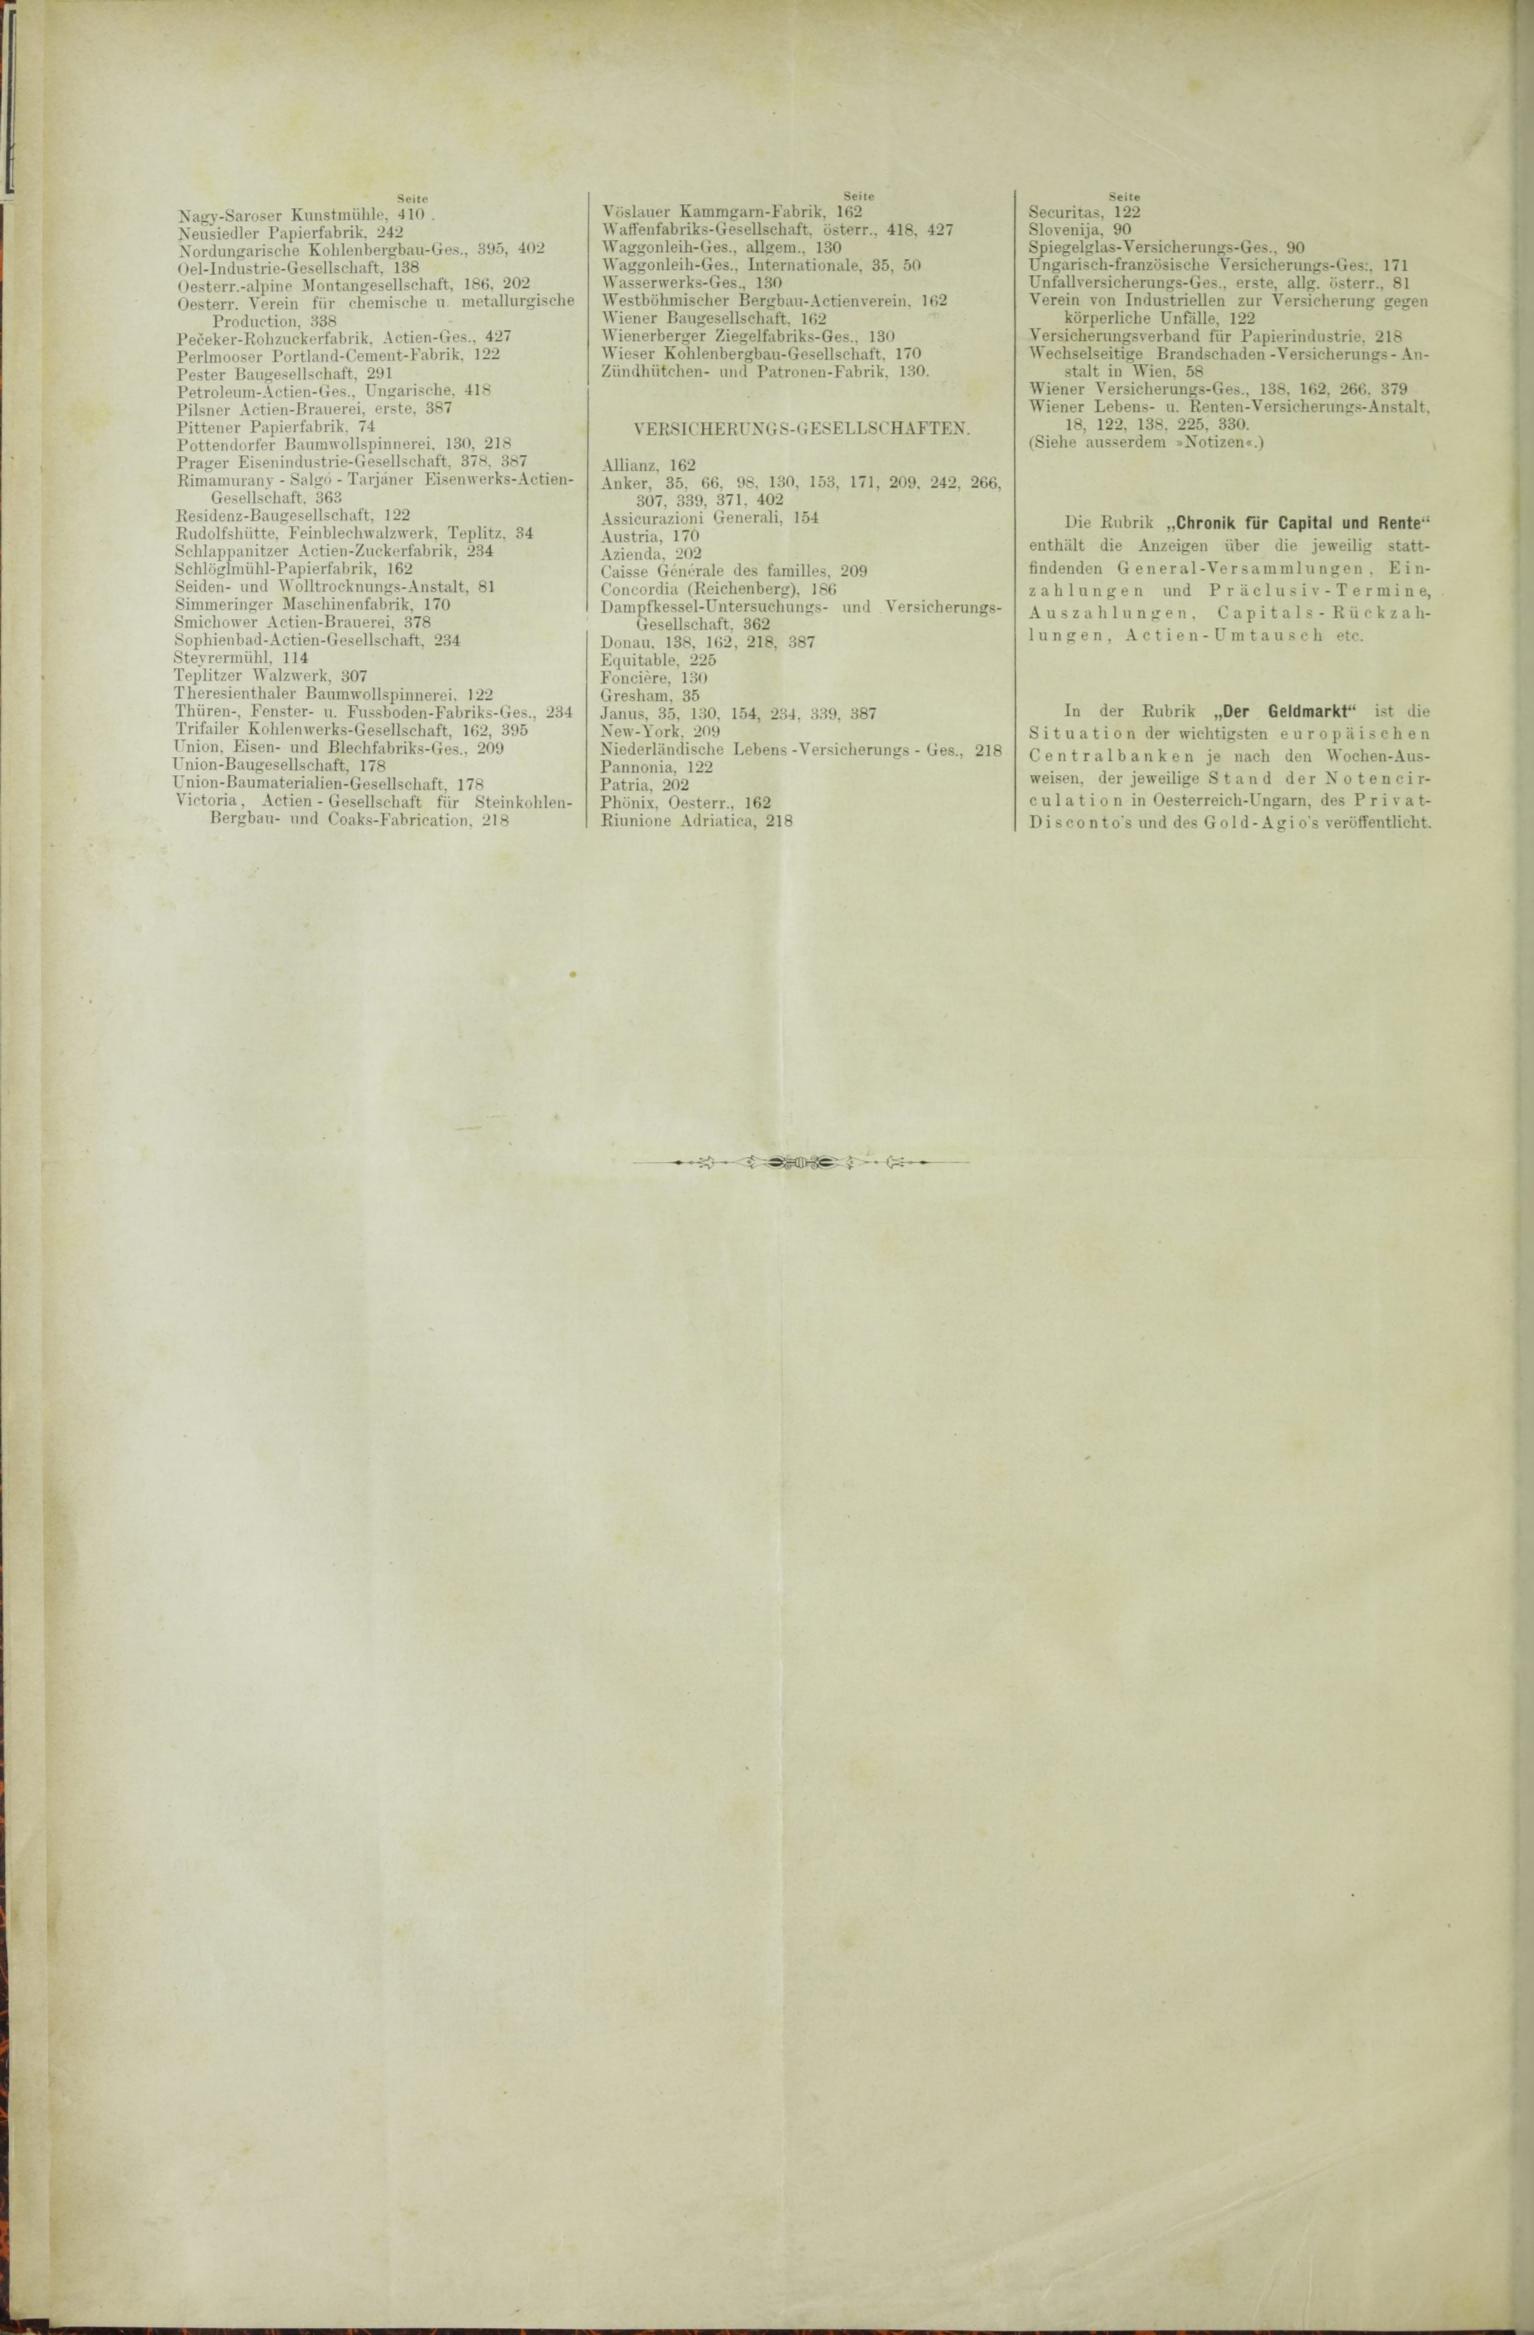 Der Tresor 02.07.1885 - Seite 12